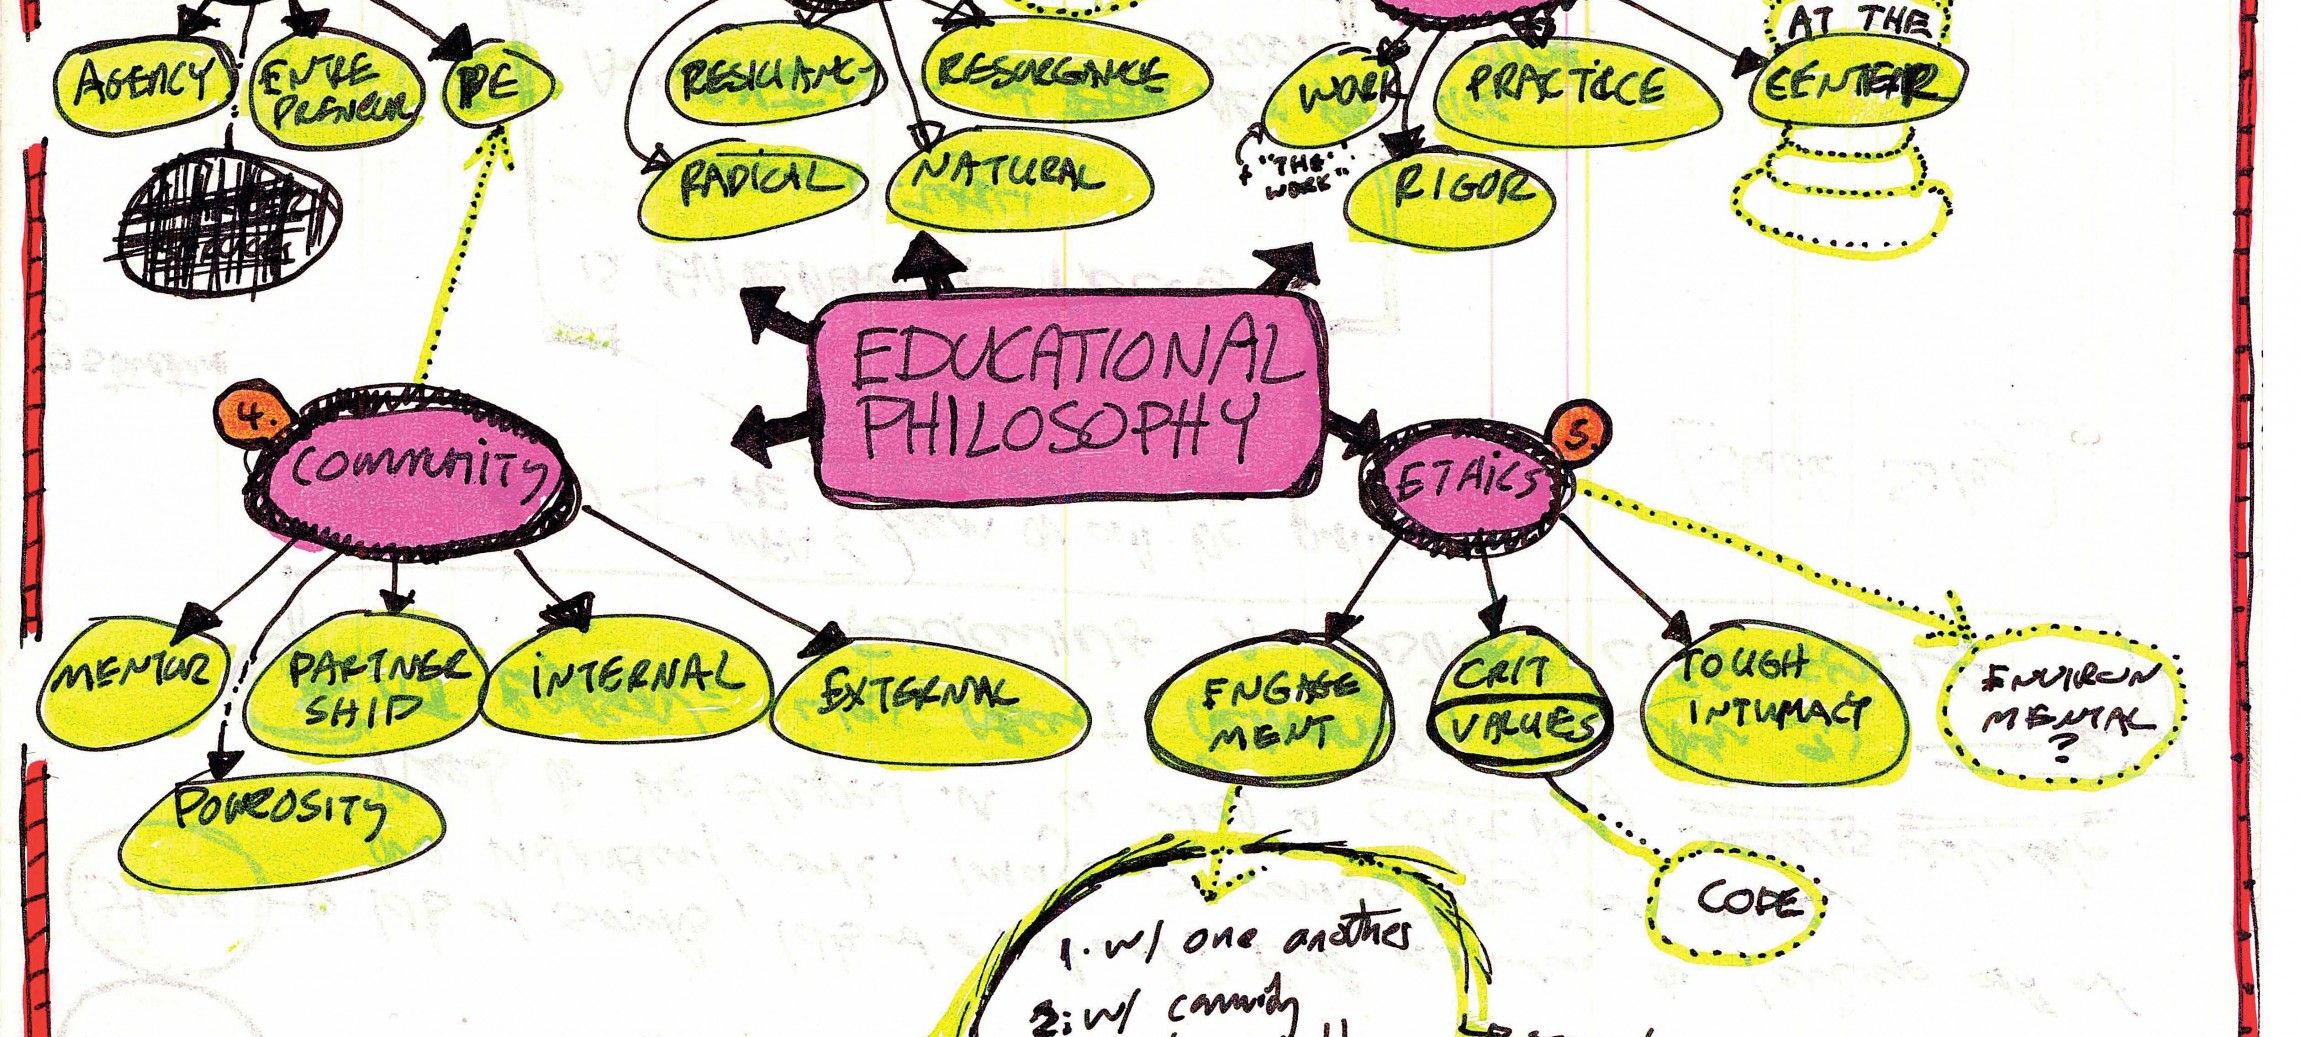 A flowchart describing an Educational Philosophy